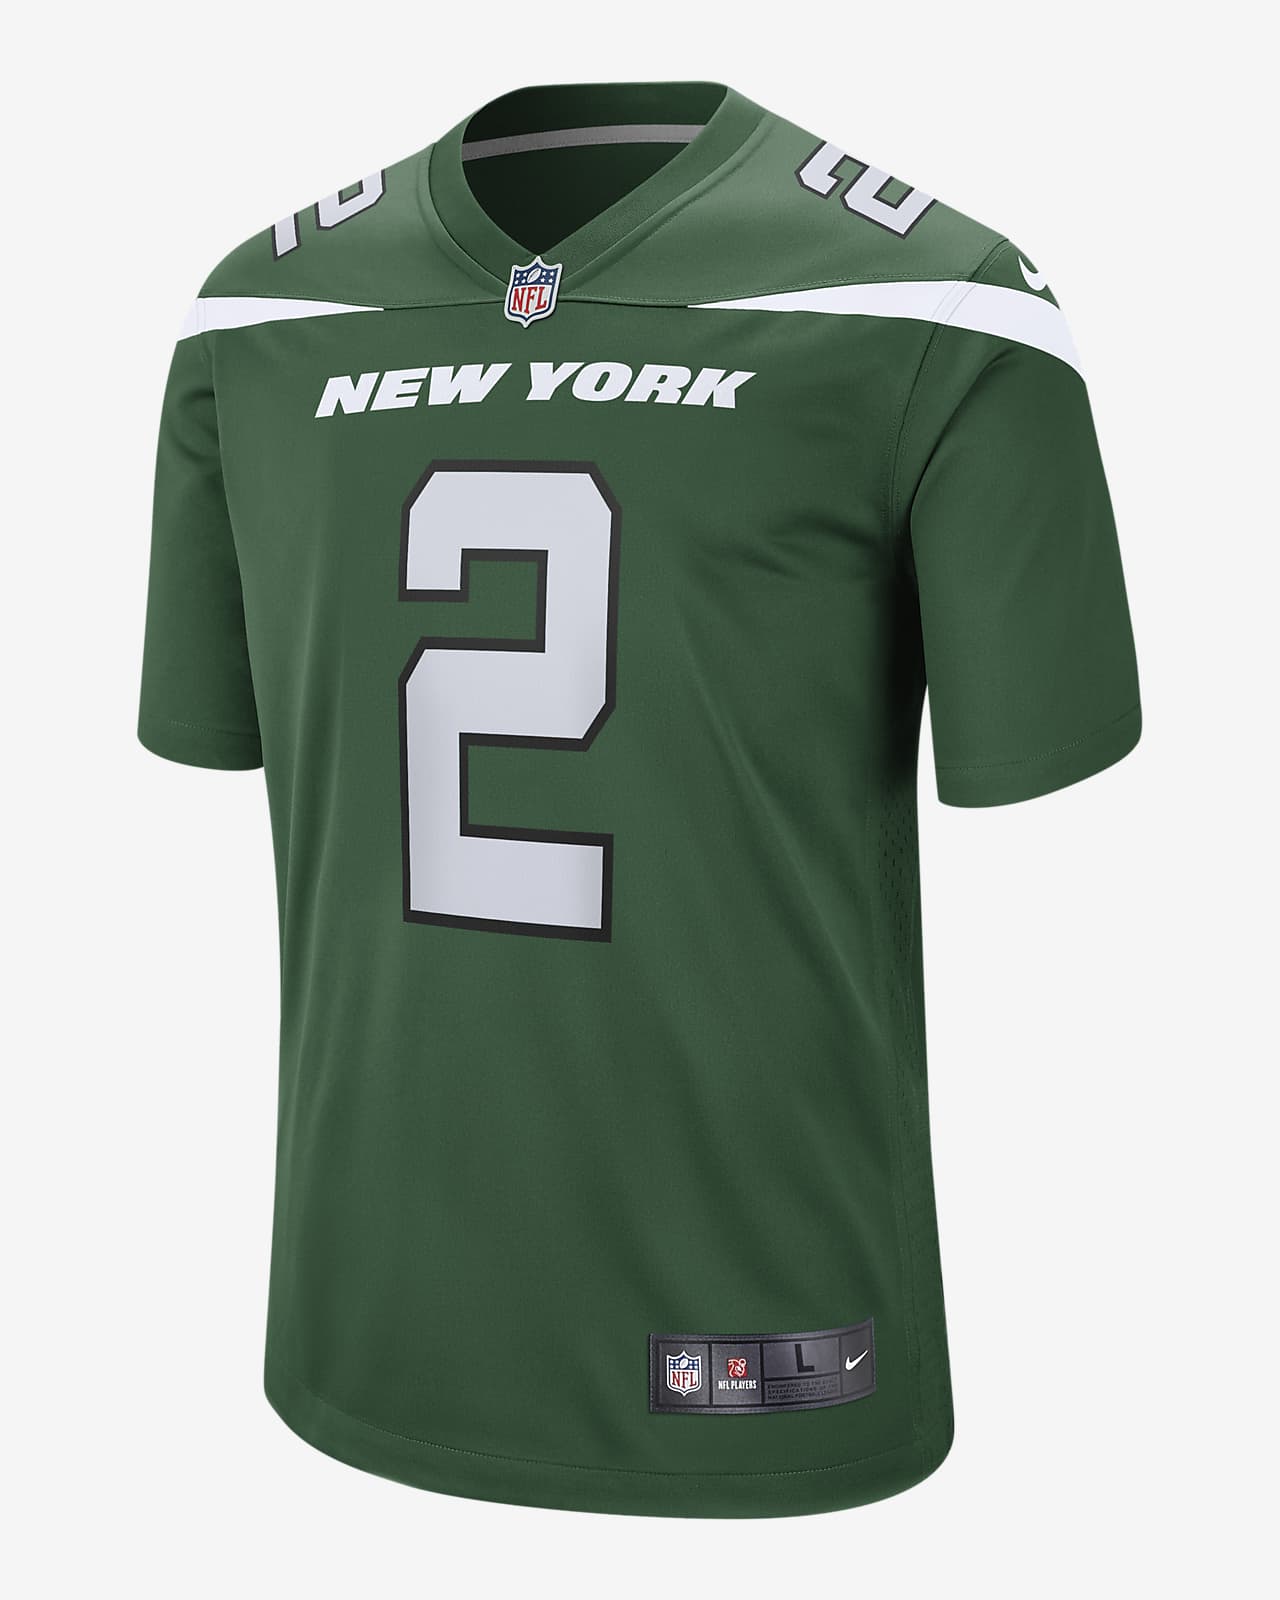 Fotbalový dres NFL New York Jets (Zach Wilson) pro muže